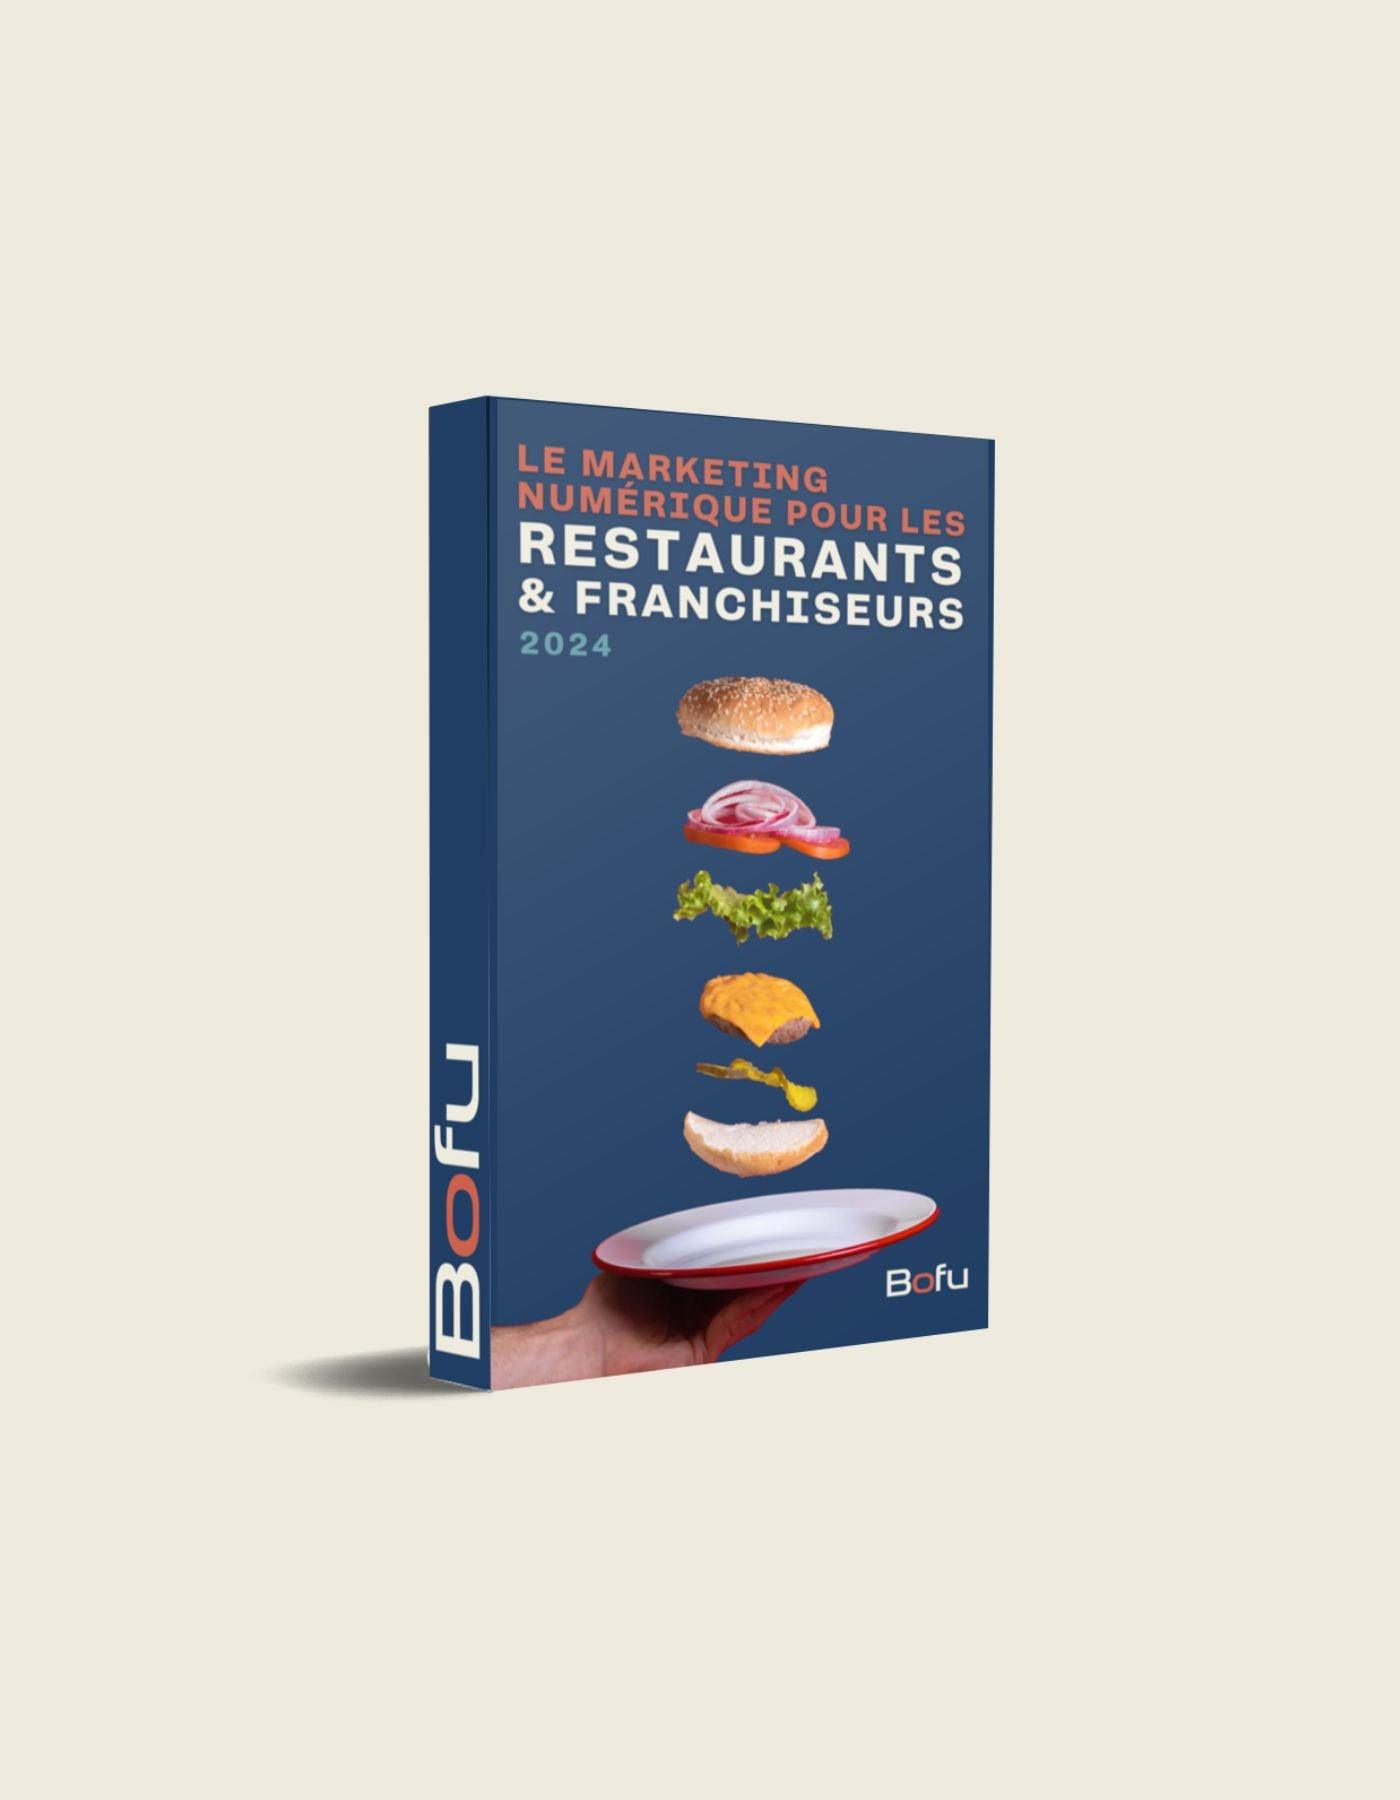 Le marketing numérique pour les restaurants & franchiseurs 2024 (Français) - Bofu Agence Marketing Web